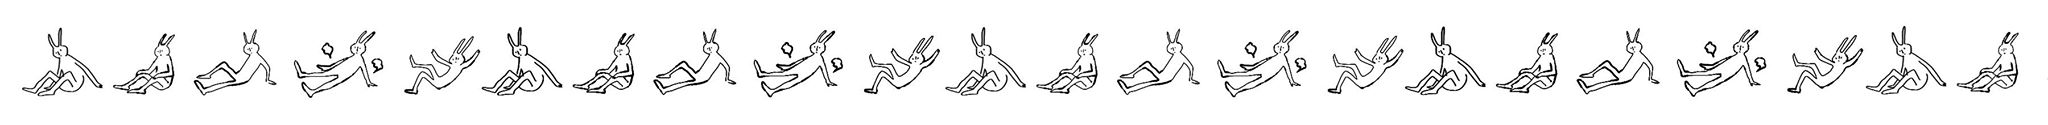 【有隻兔子】翻滾吧兔子!紙膠帶